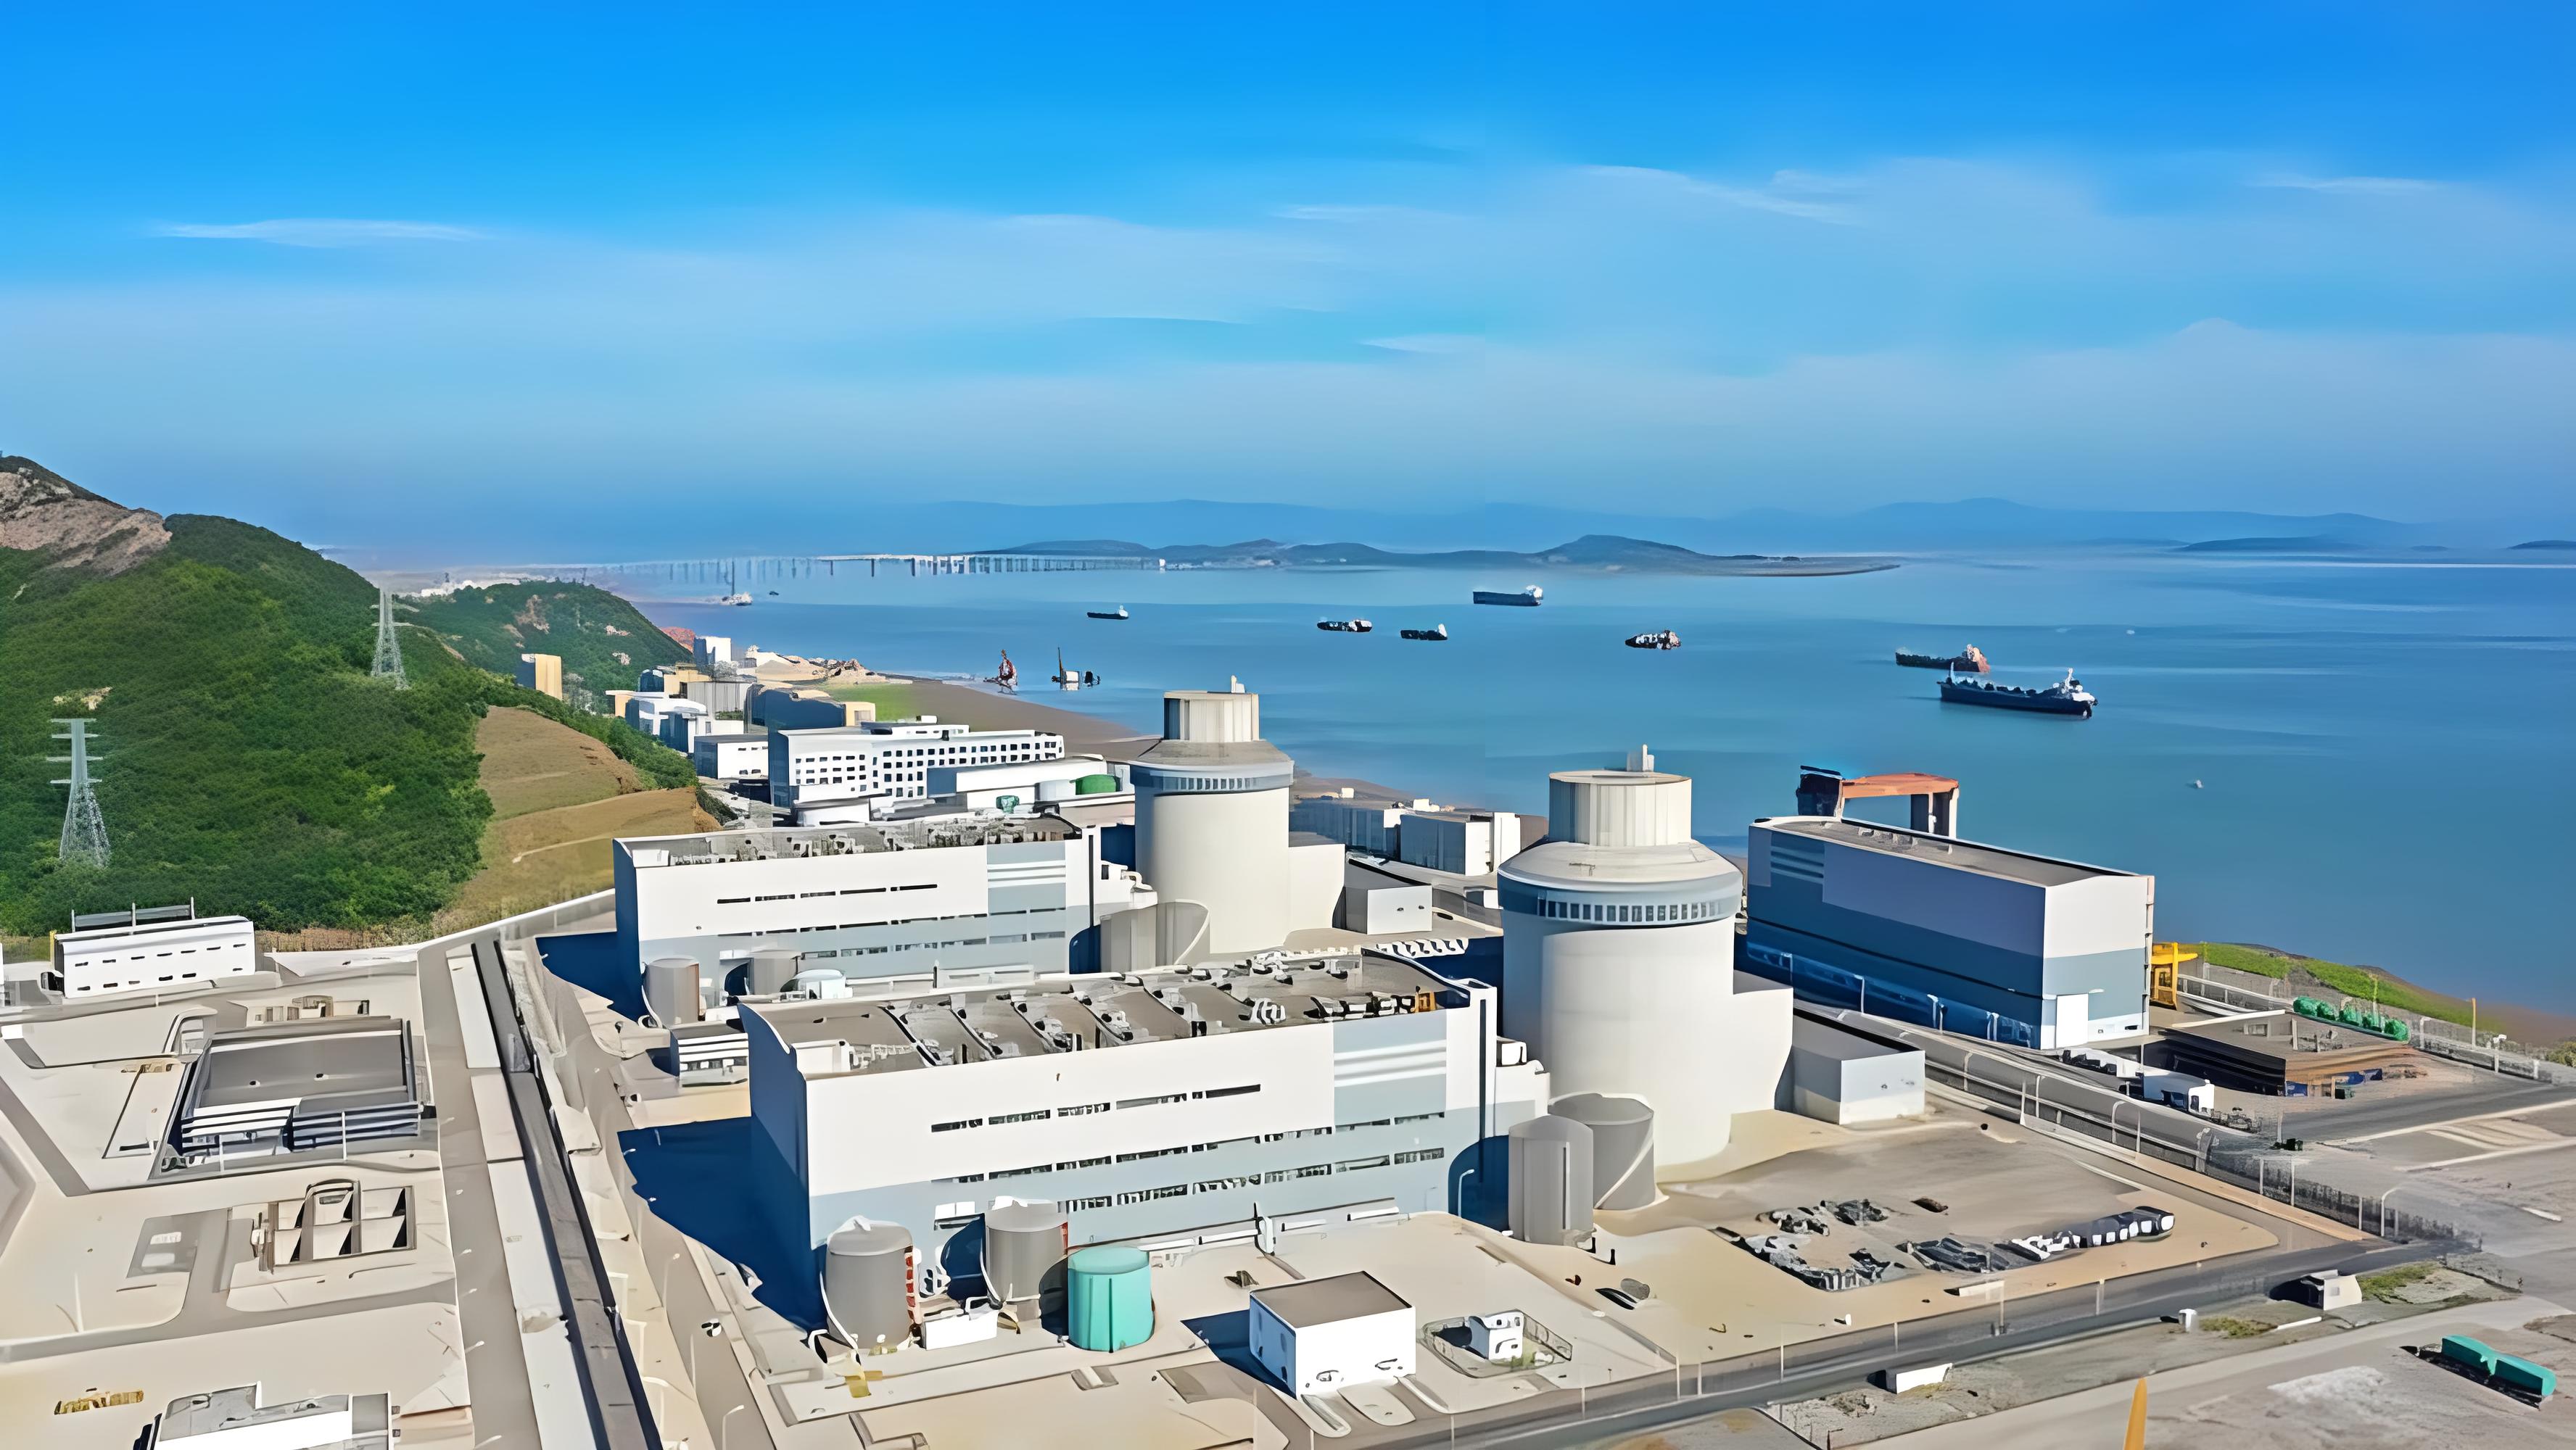 核电站的安全生产运行面临的风险和挑战有哪些？需要怎样应对